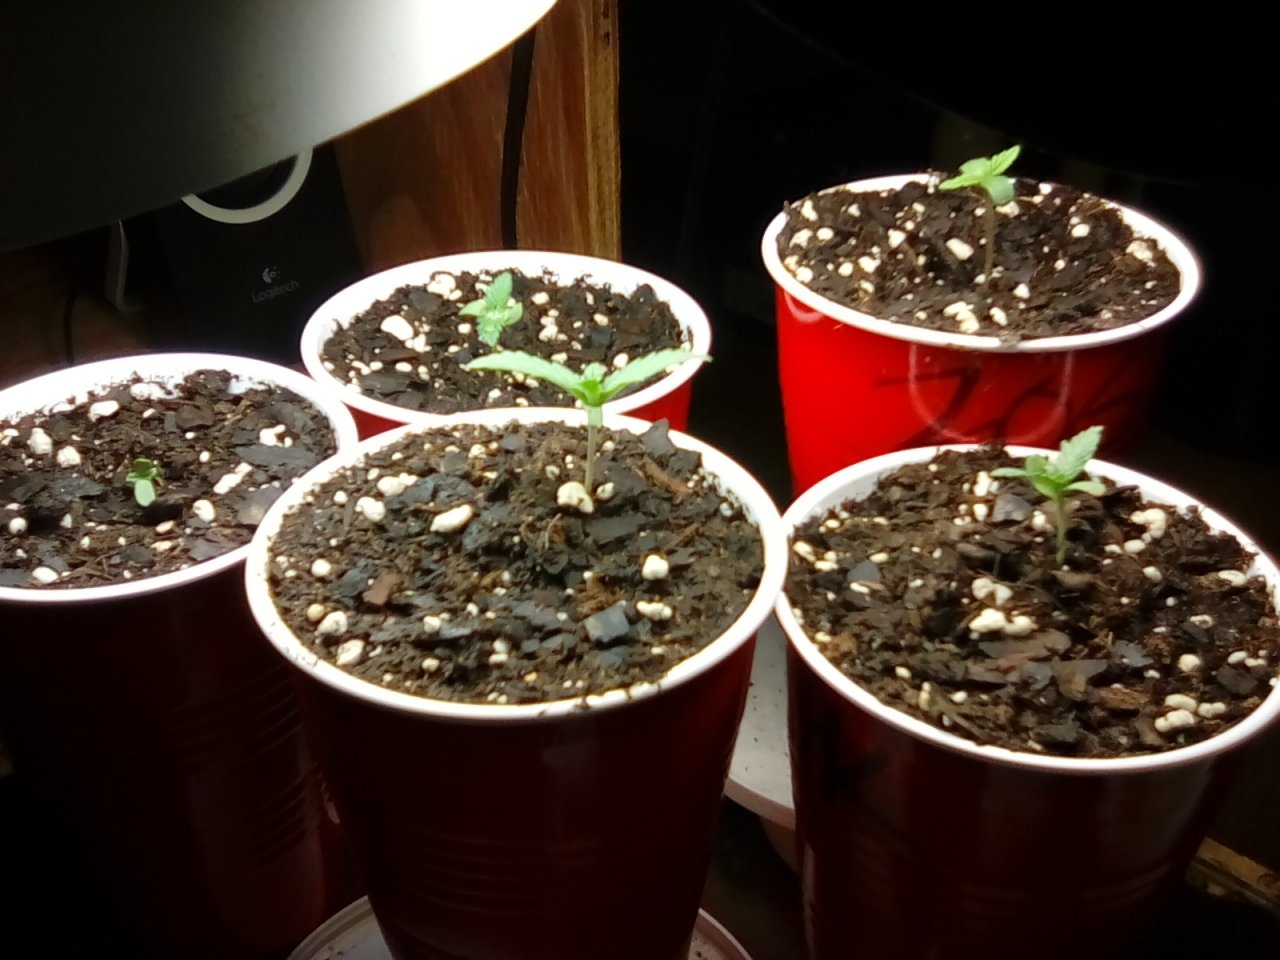 Seedlings looking good